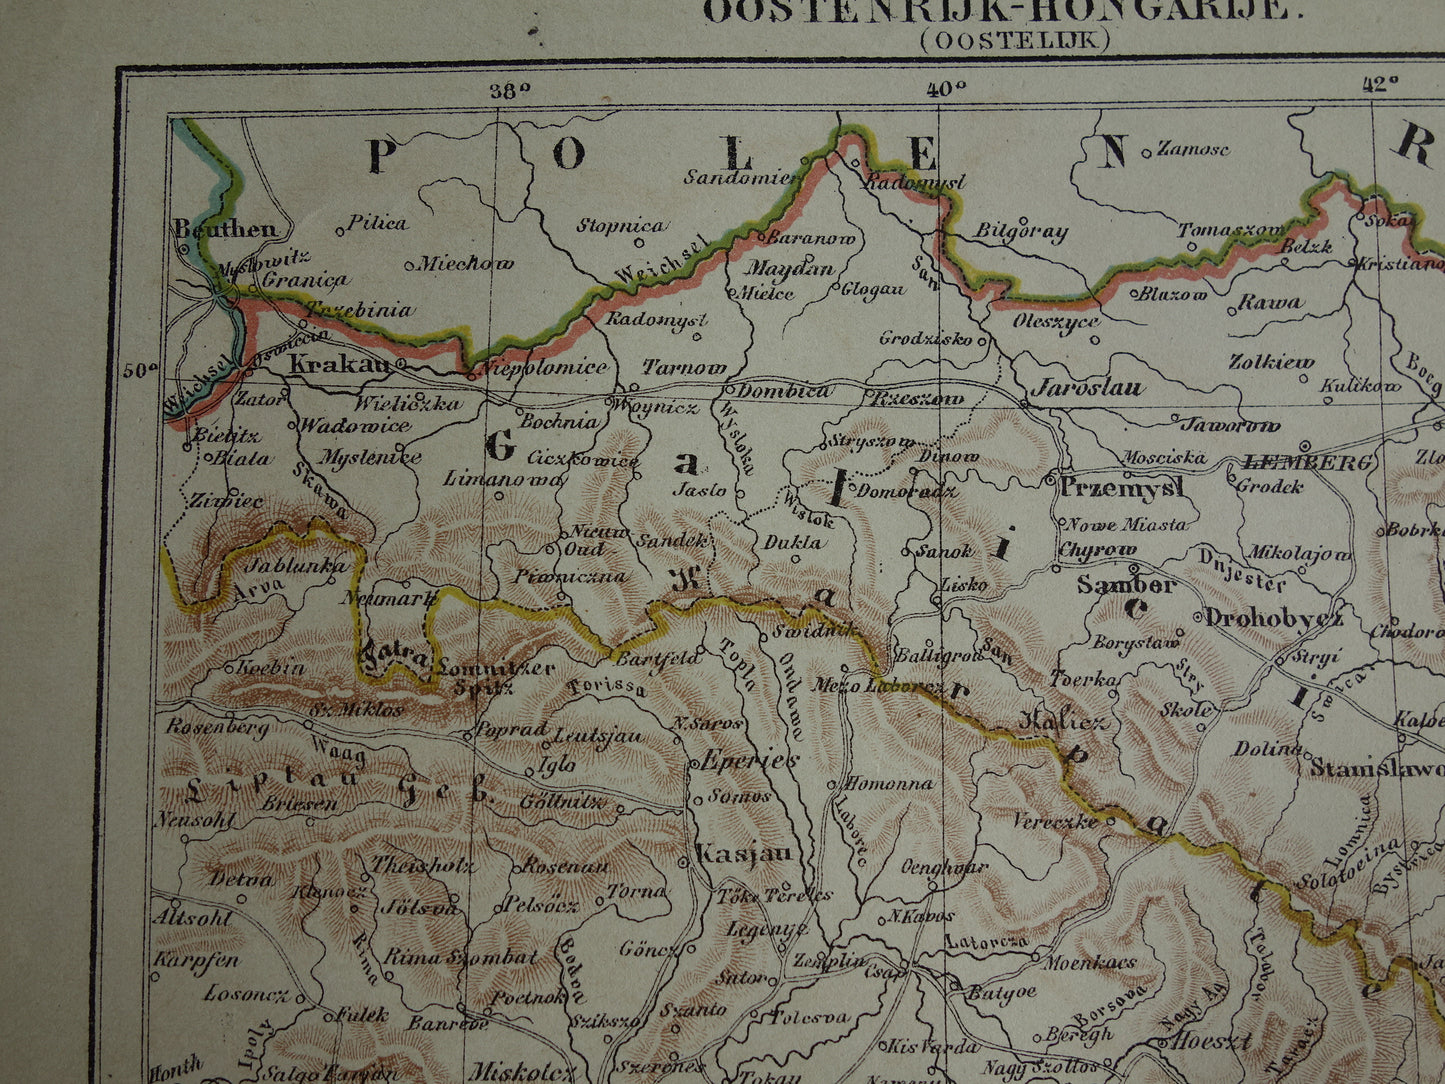 Oostenrijk oude landkaart originele antieke Kuyper kaart uit 1882 vintage kaarten Budapest Zevenbergen Transsylvanië Galicië